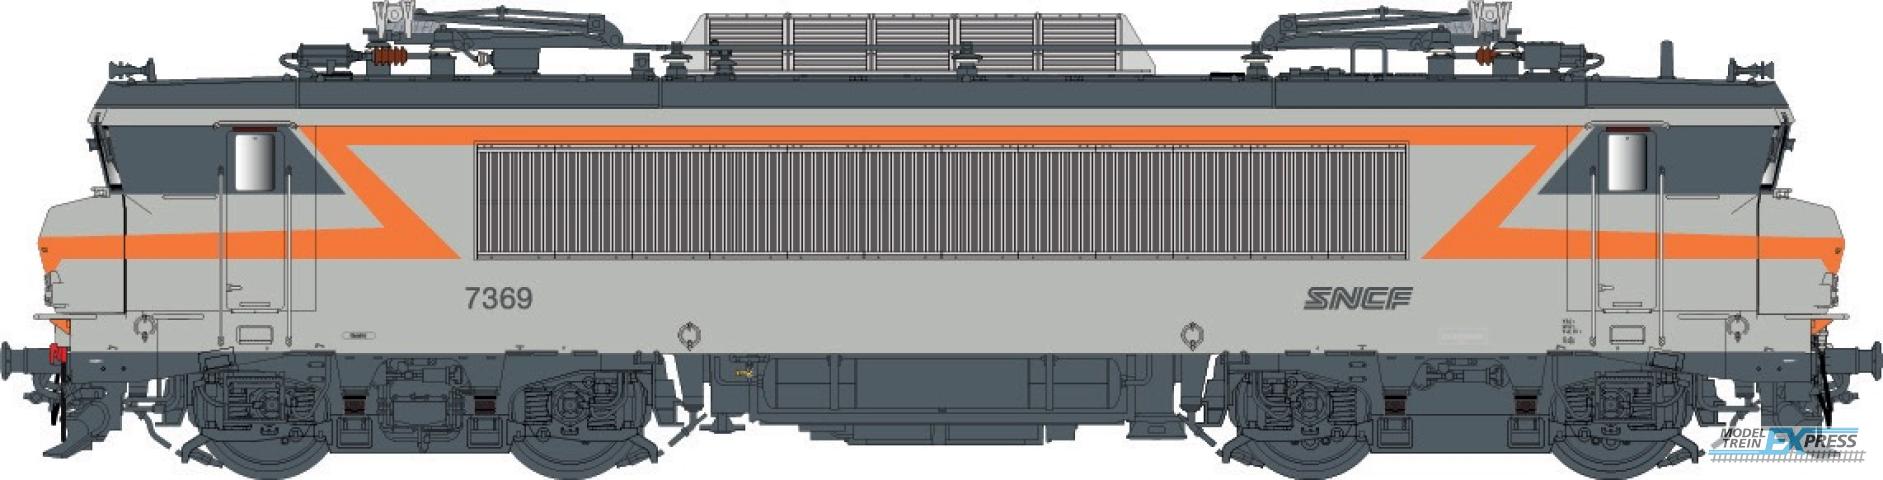 LS Models 11704 BB 7200, grijs/oranje, noedles logo, front nummer, grote cabine  /  Ep. V  /  SNCF  /  HO  /  AC  /  1 P.